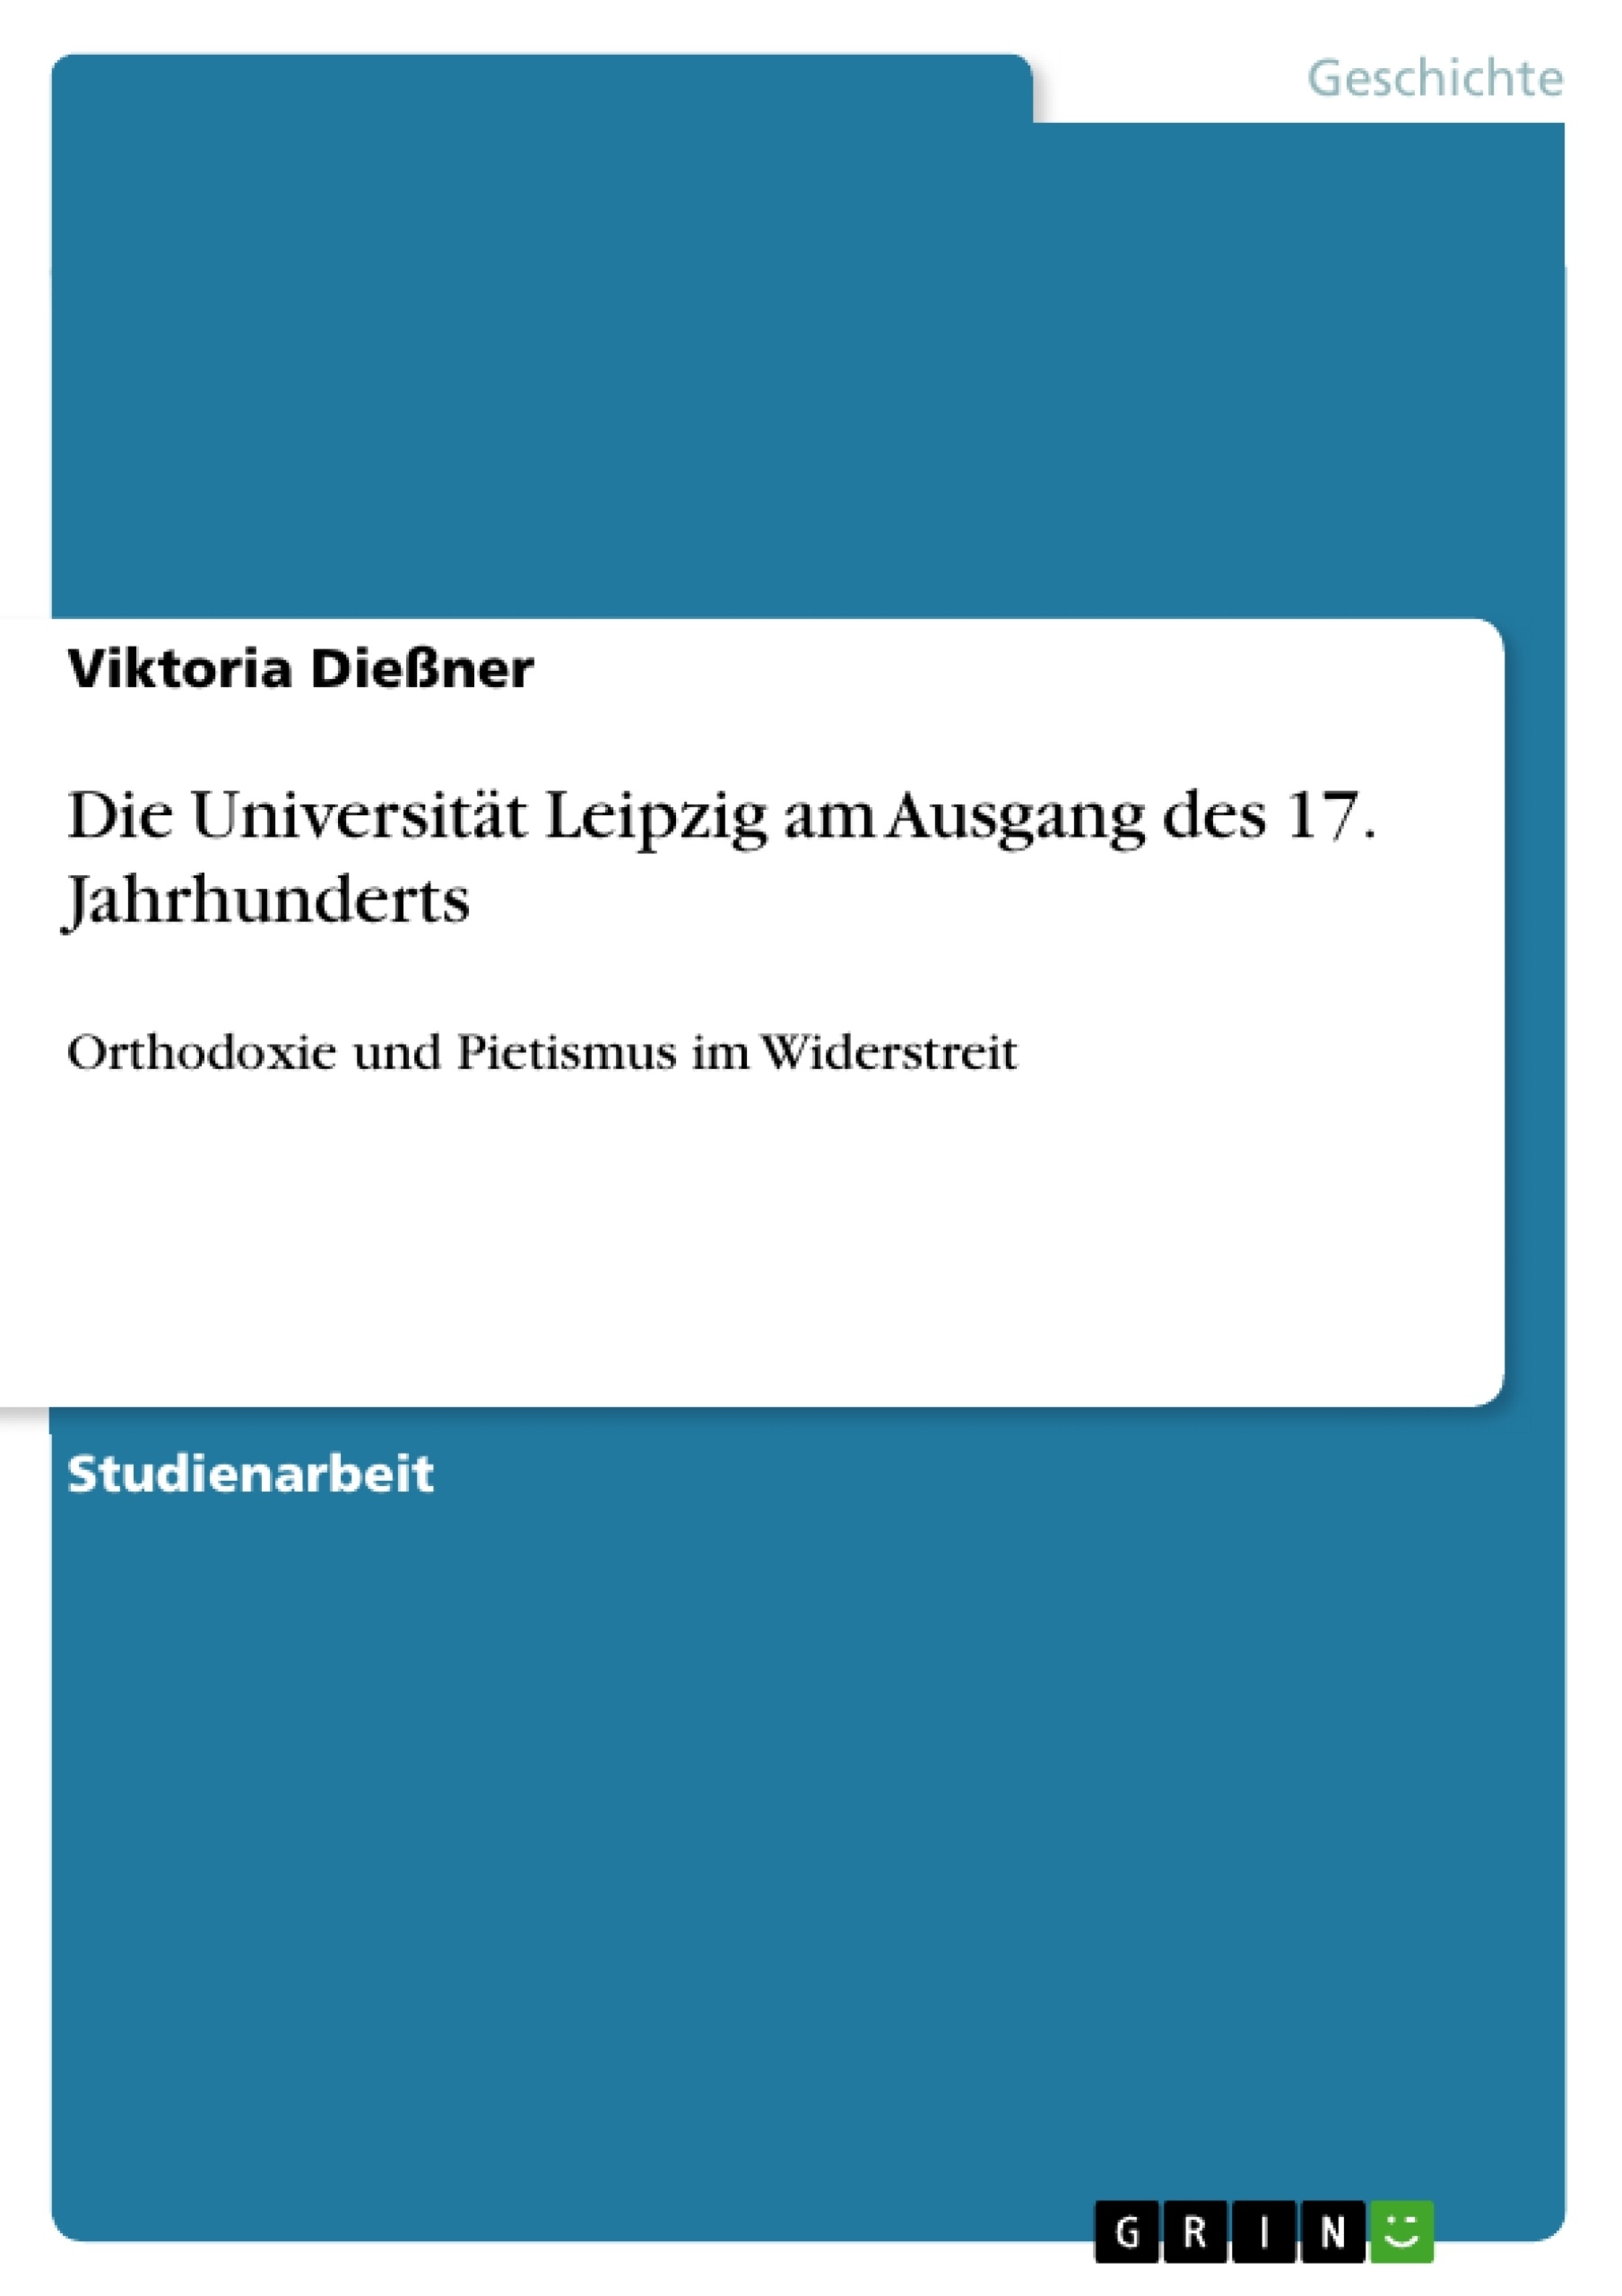 Title: Die Universität Leipzig am Ausgang des 17. Jahrhunderts 